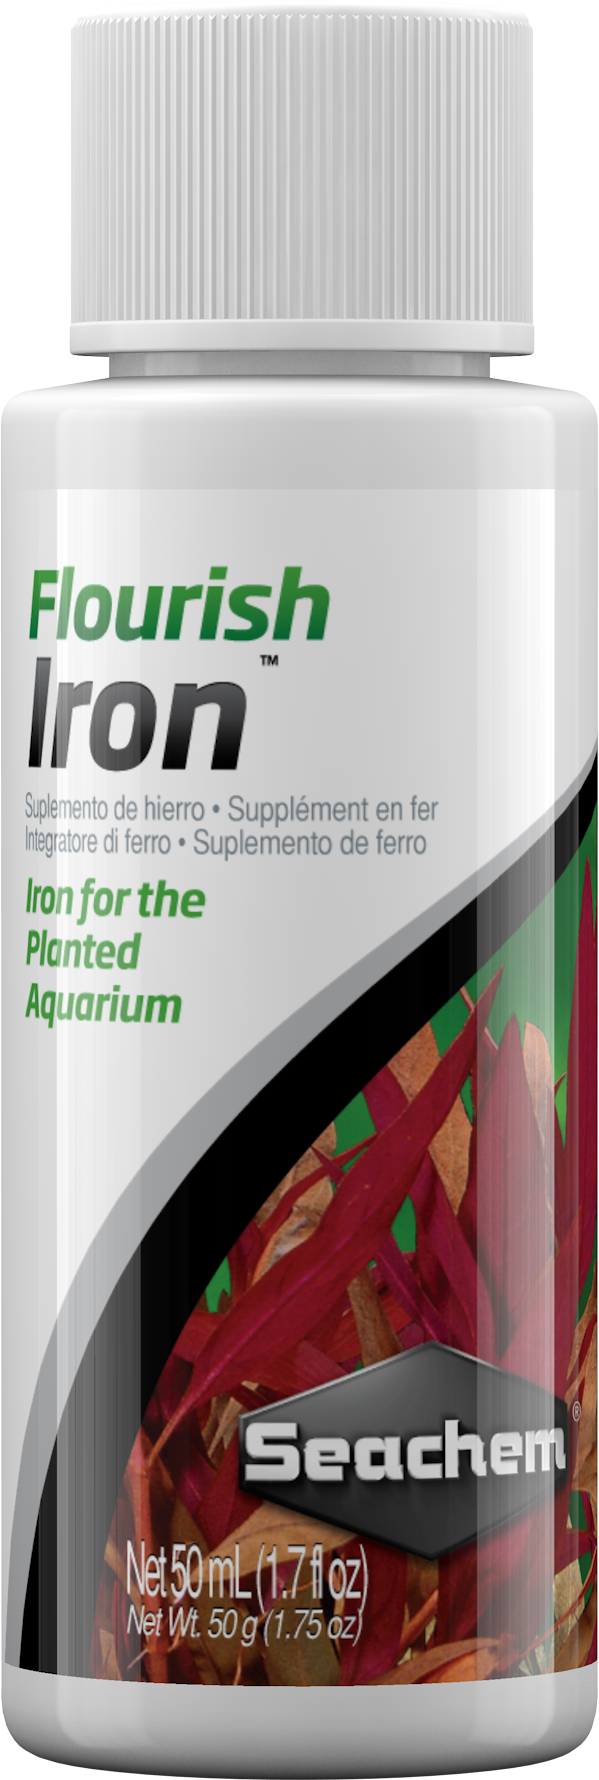 Seachem Flourish Iron Seachem